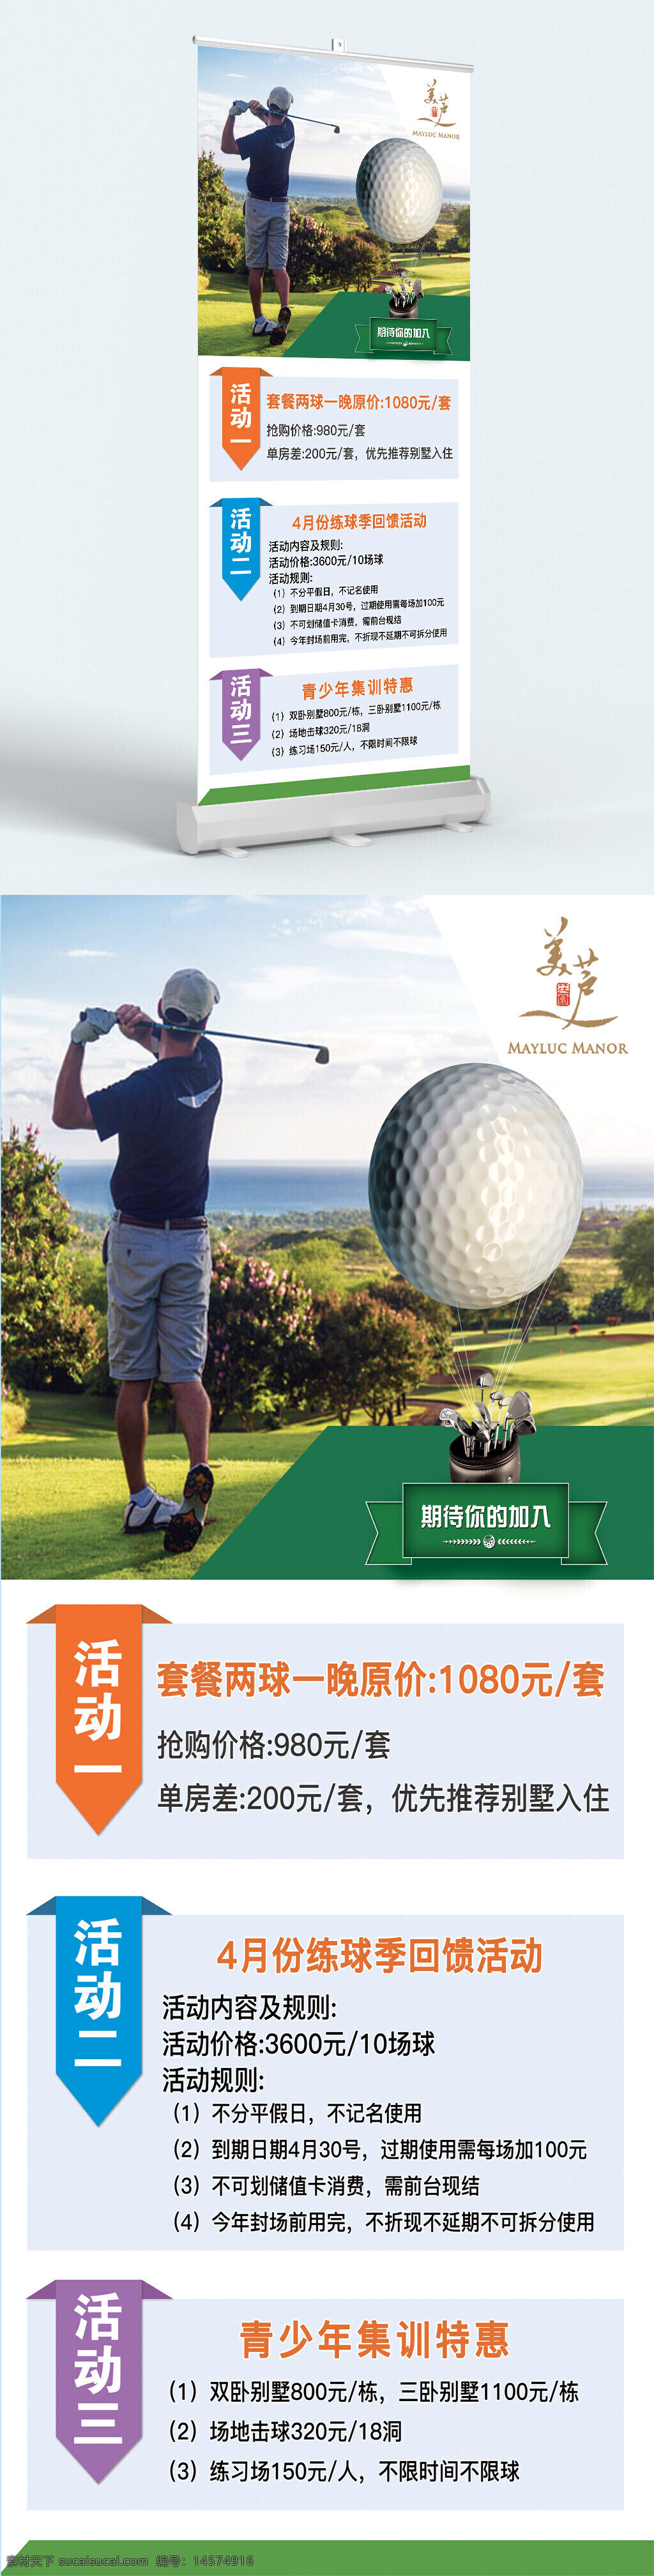 高尔夫 高尔夫比赛 高尔夫运动 高尔夫海报 高尔夫球场 打高尔夫 高尔夫背景 高尔夫挂图 高尔夫挂画 高尔夫文化 室内高尔夫 高尔夫酒店 高尔夫培训 高尔夫招生 高尔夫艺术 高尔夫球